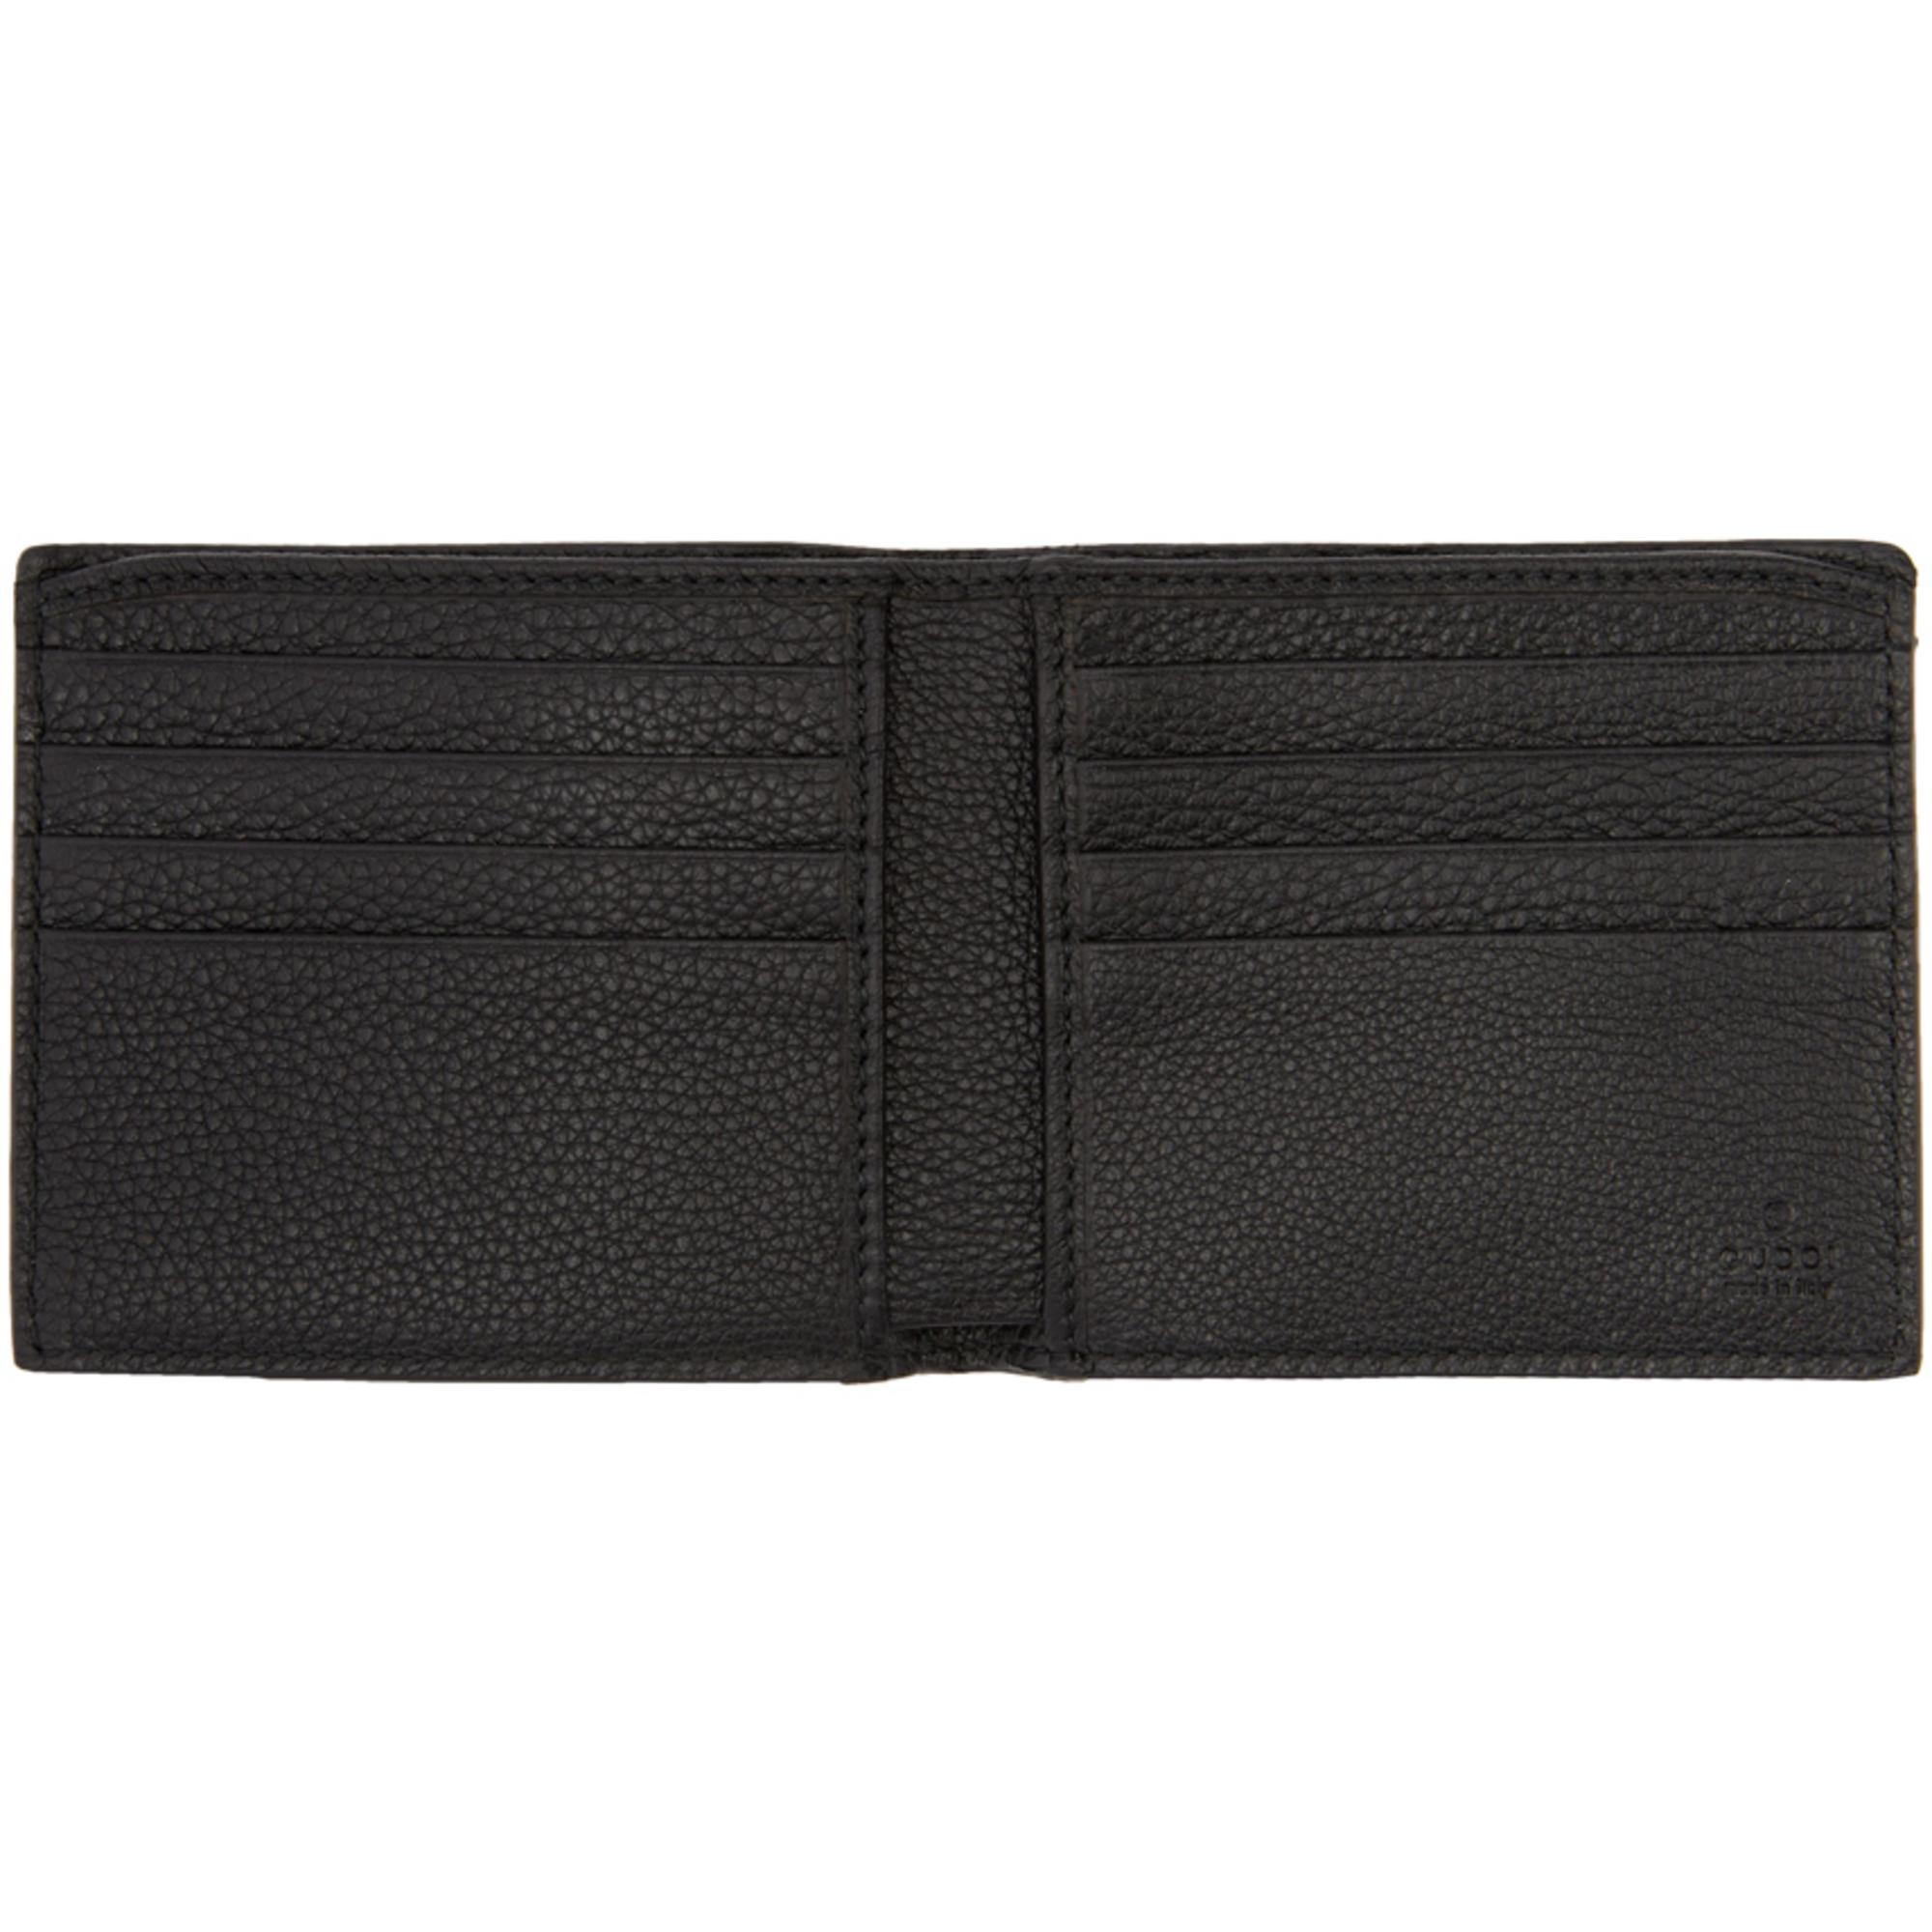 Lyst - Gucci Black Logo Wallet in Black for Men